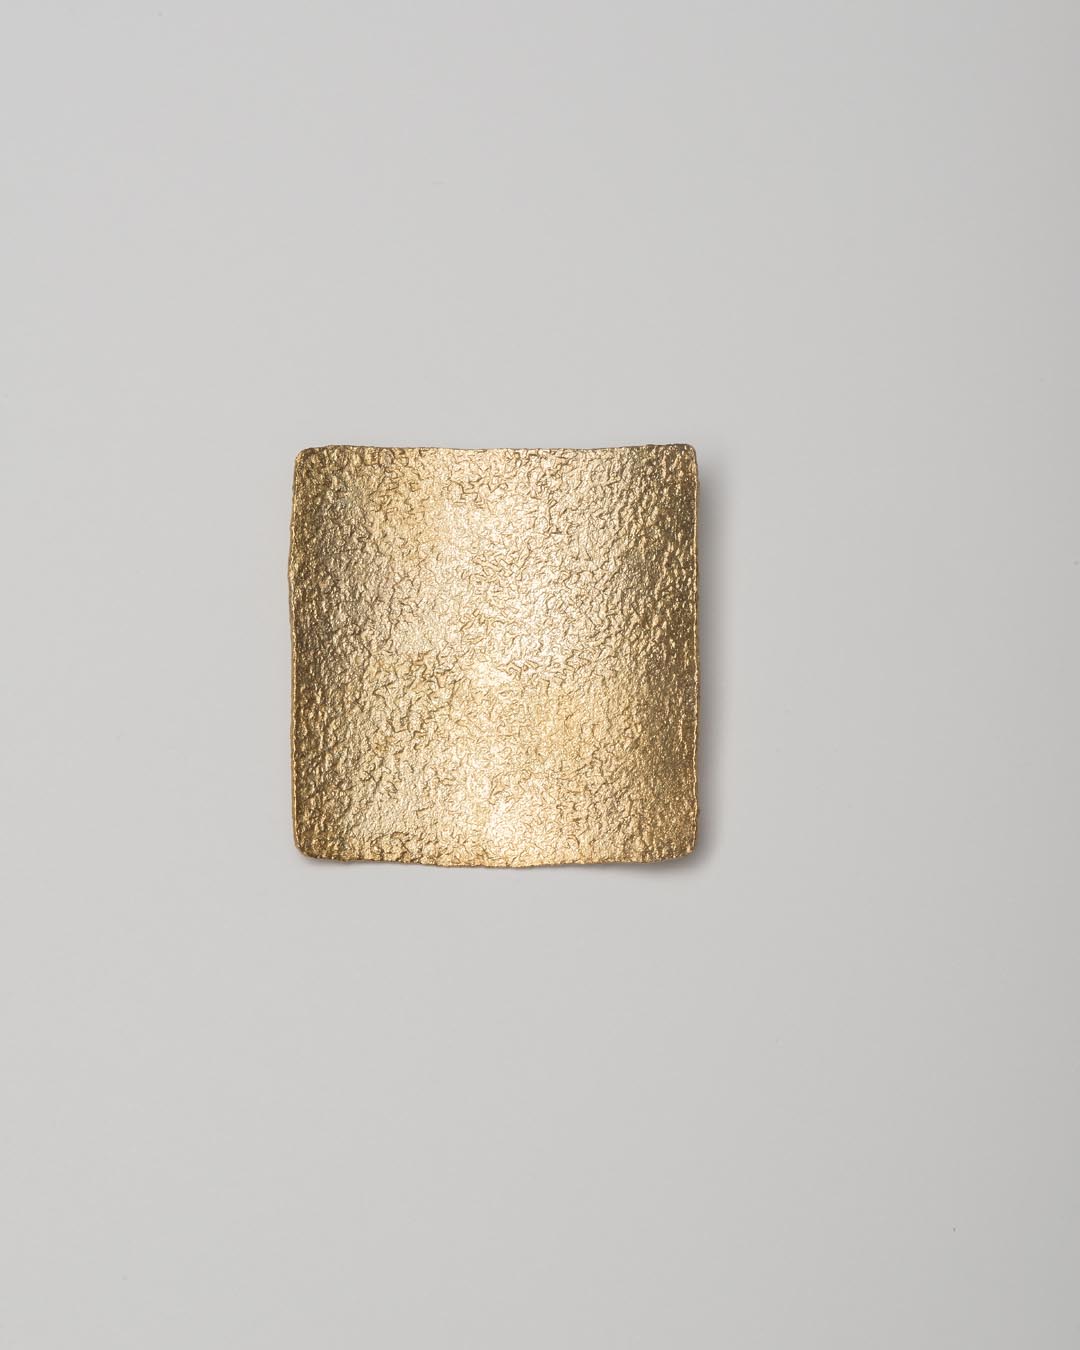 Yasuki Hiramatsu, untitled, brooch; gold-plated silver, 46 x 48 x 6 mm